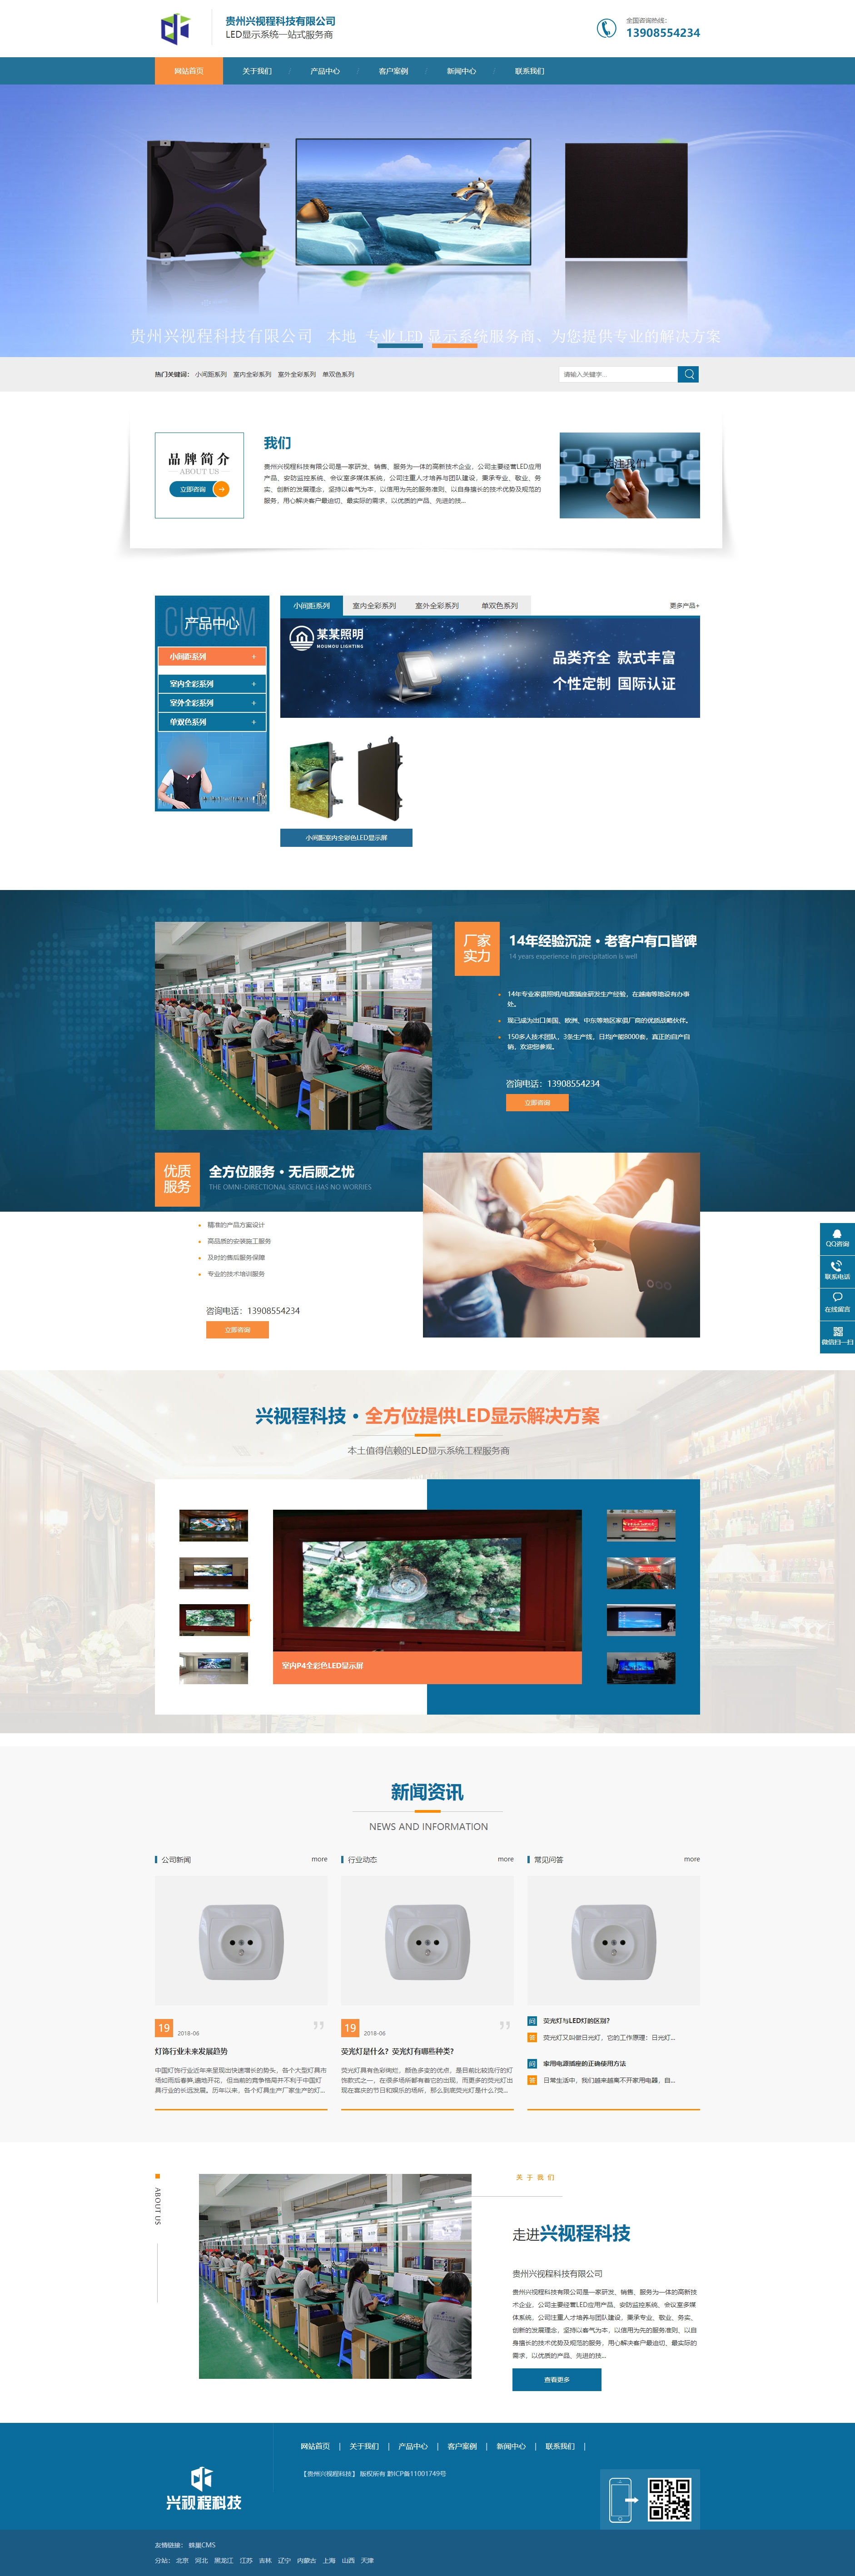 盘县贵州兴视程科技有限公司 网站正式上线